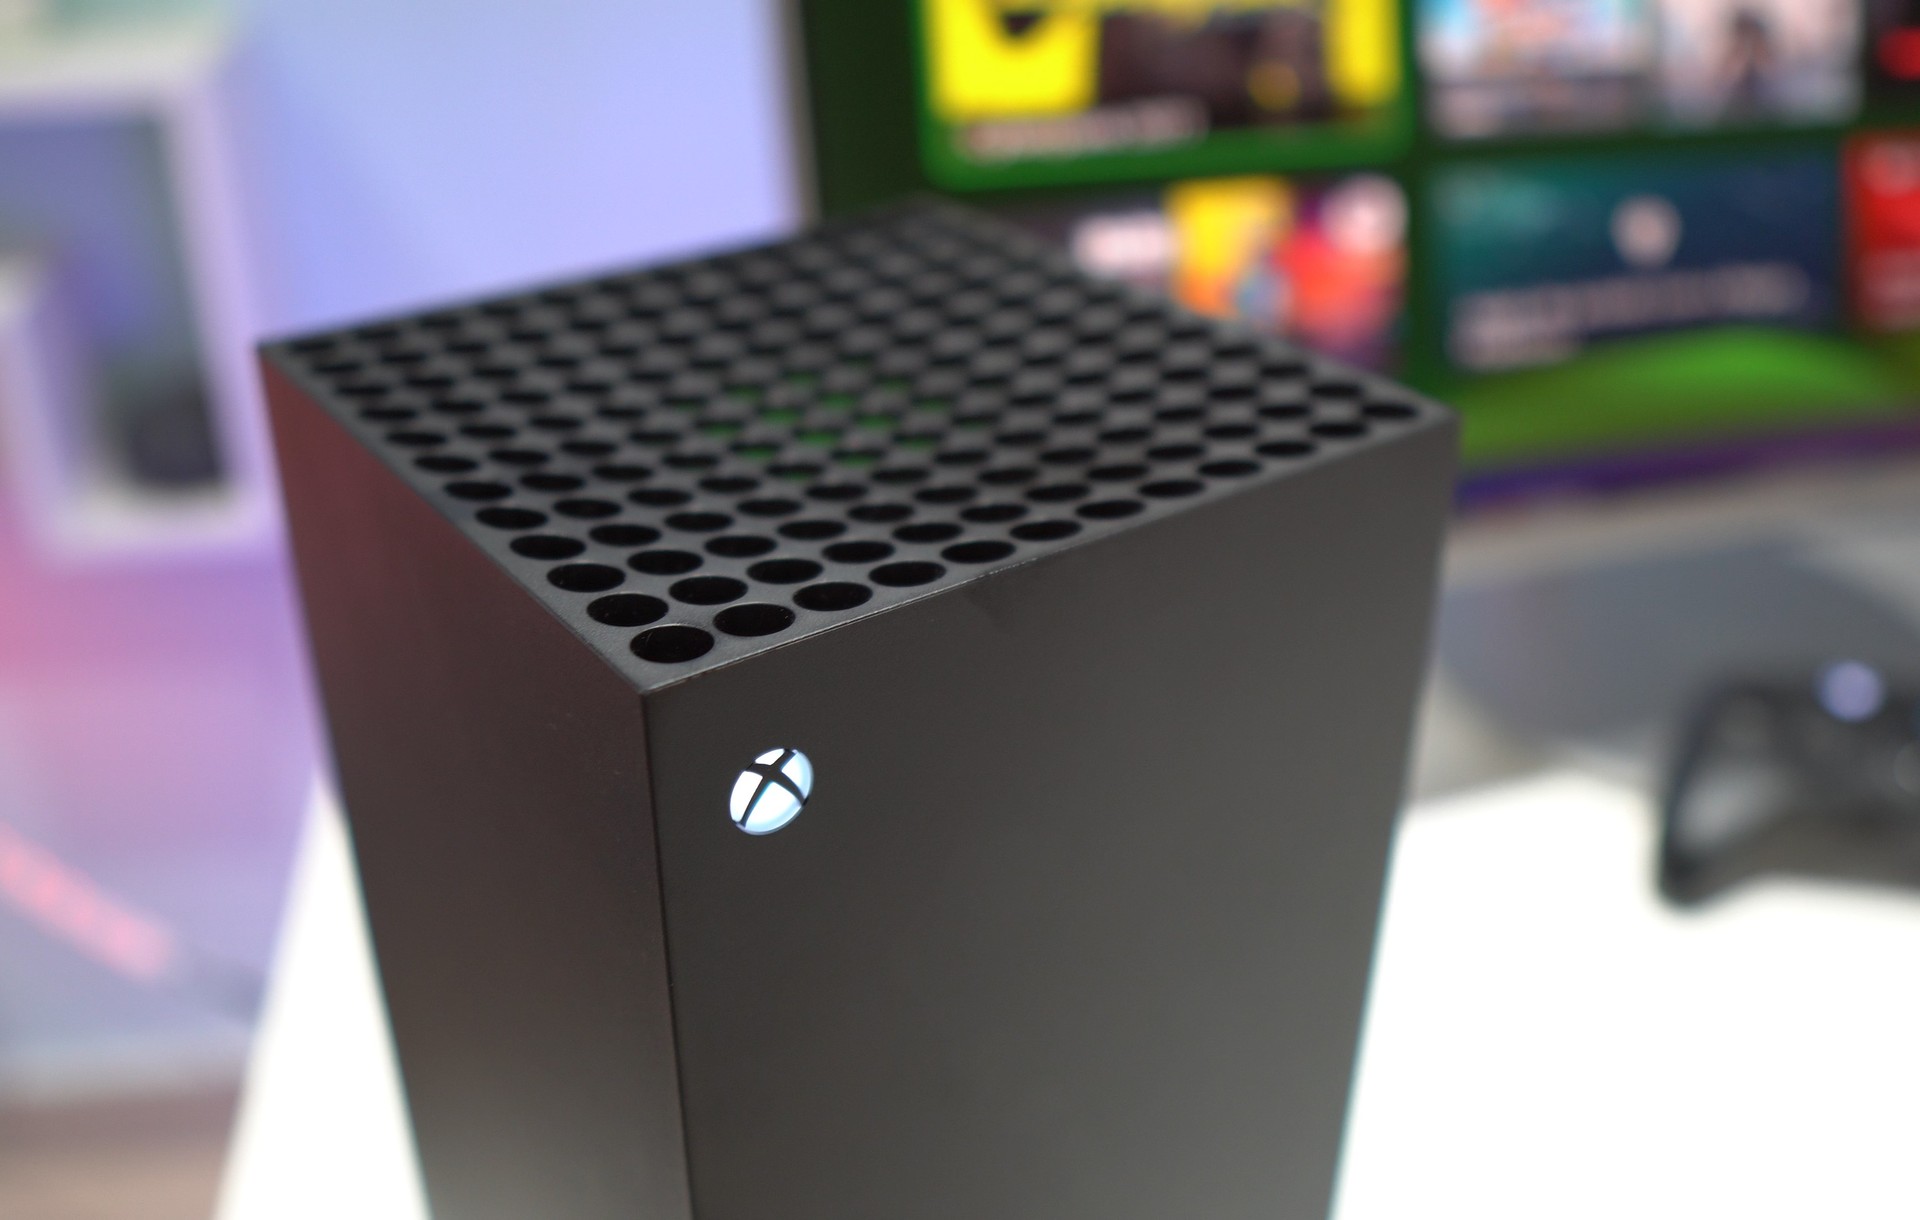 Próxima Semana em Xbox: novos jogos para 5 a 9 de dezembro - Xbox Wire em  Português